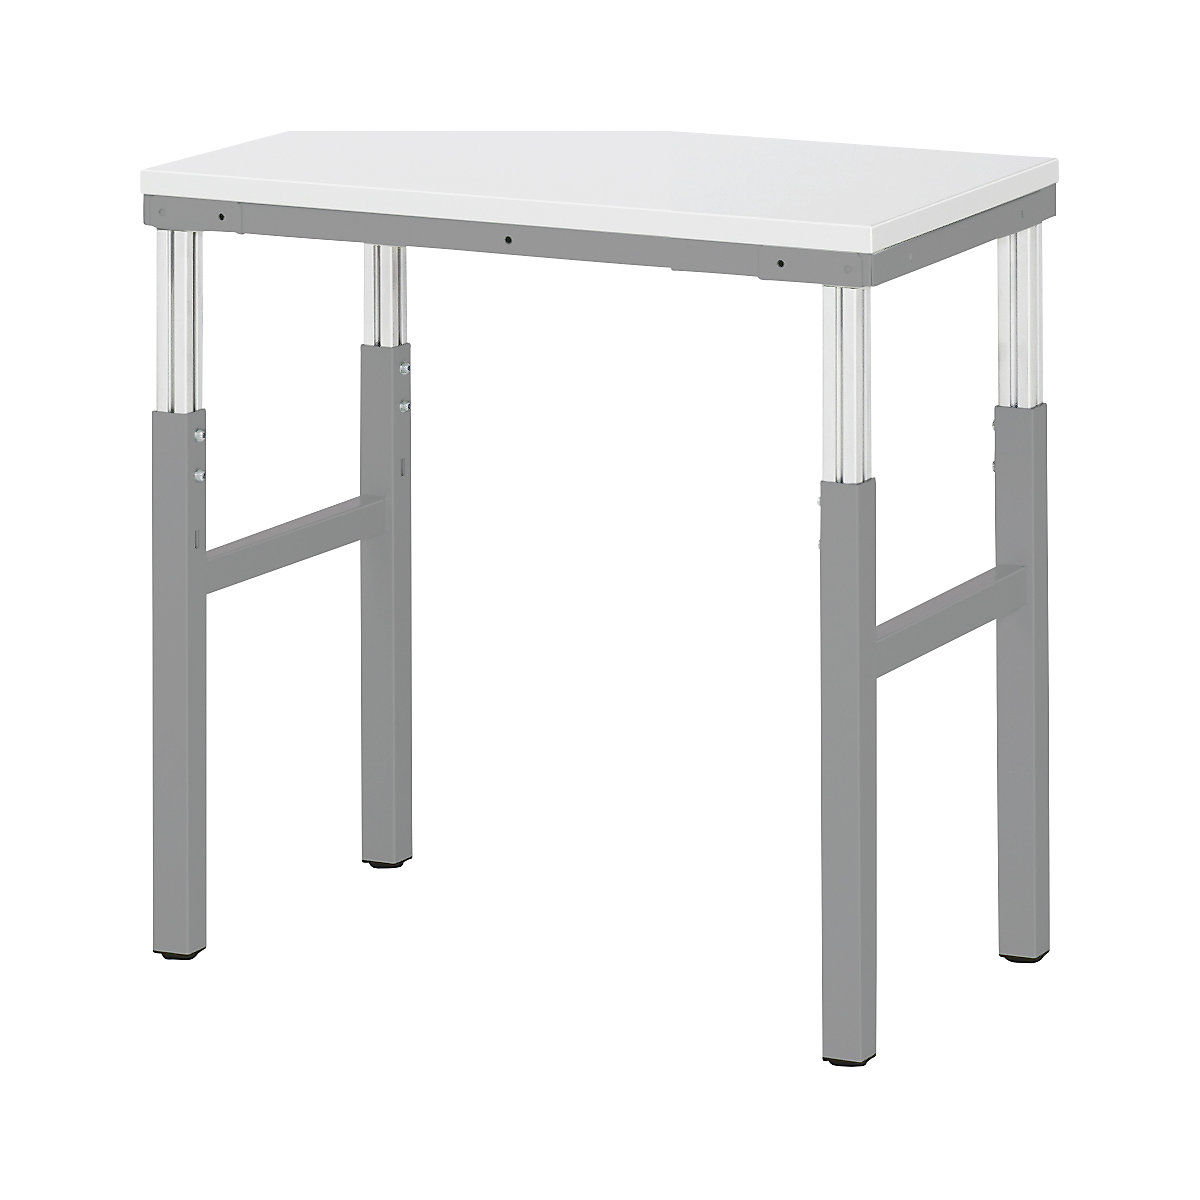 Pracovní stůl ESD – RAU, rozsah přestavování výšky 650 – 1000 mm, š x h 700 x 500 mm